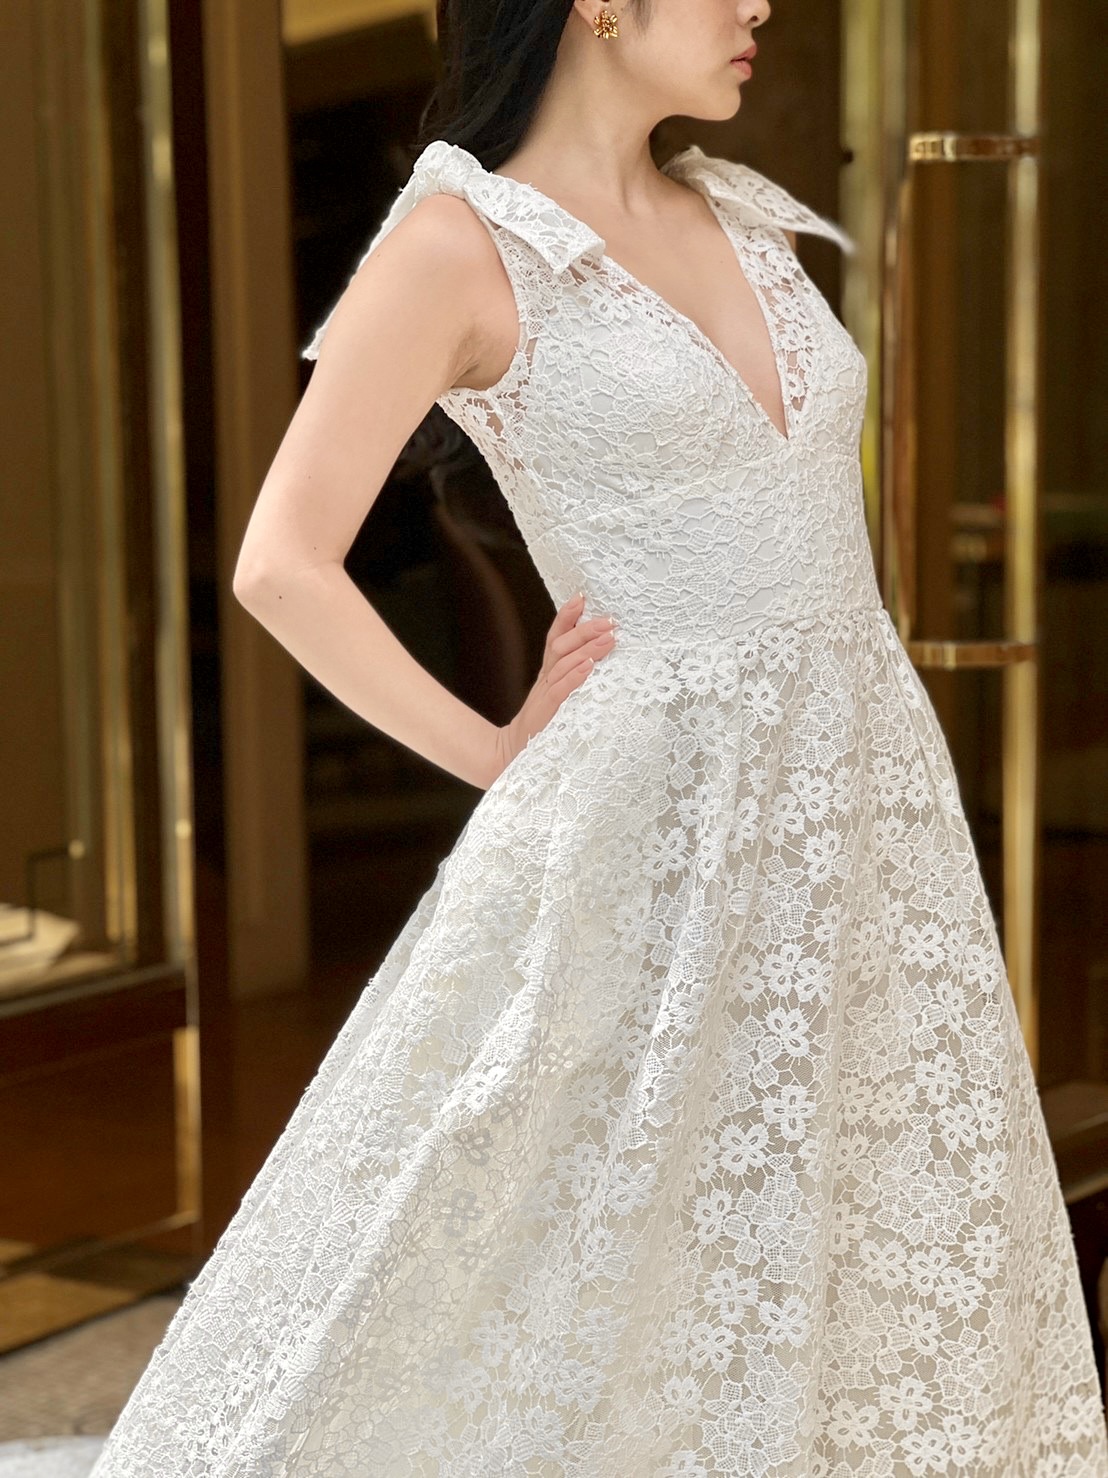 韓国ドラマ・愛の不時着で話題のソン・イェジンが結婚式でお召しになられたエリー サーブ ブライドの袖コンシャスなウェディングドレス